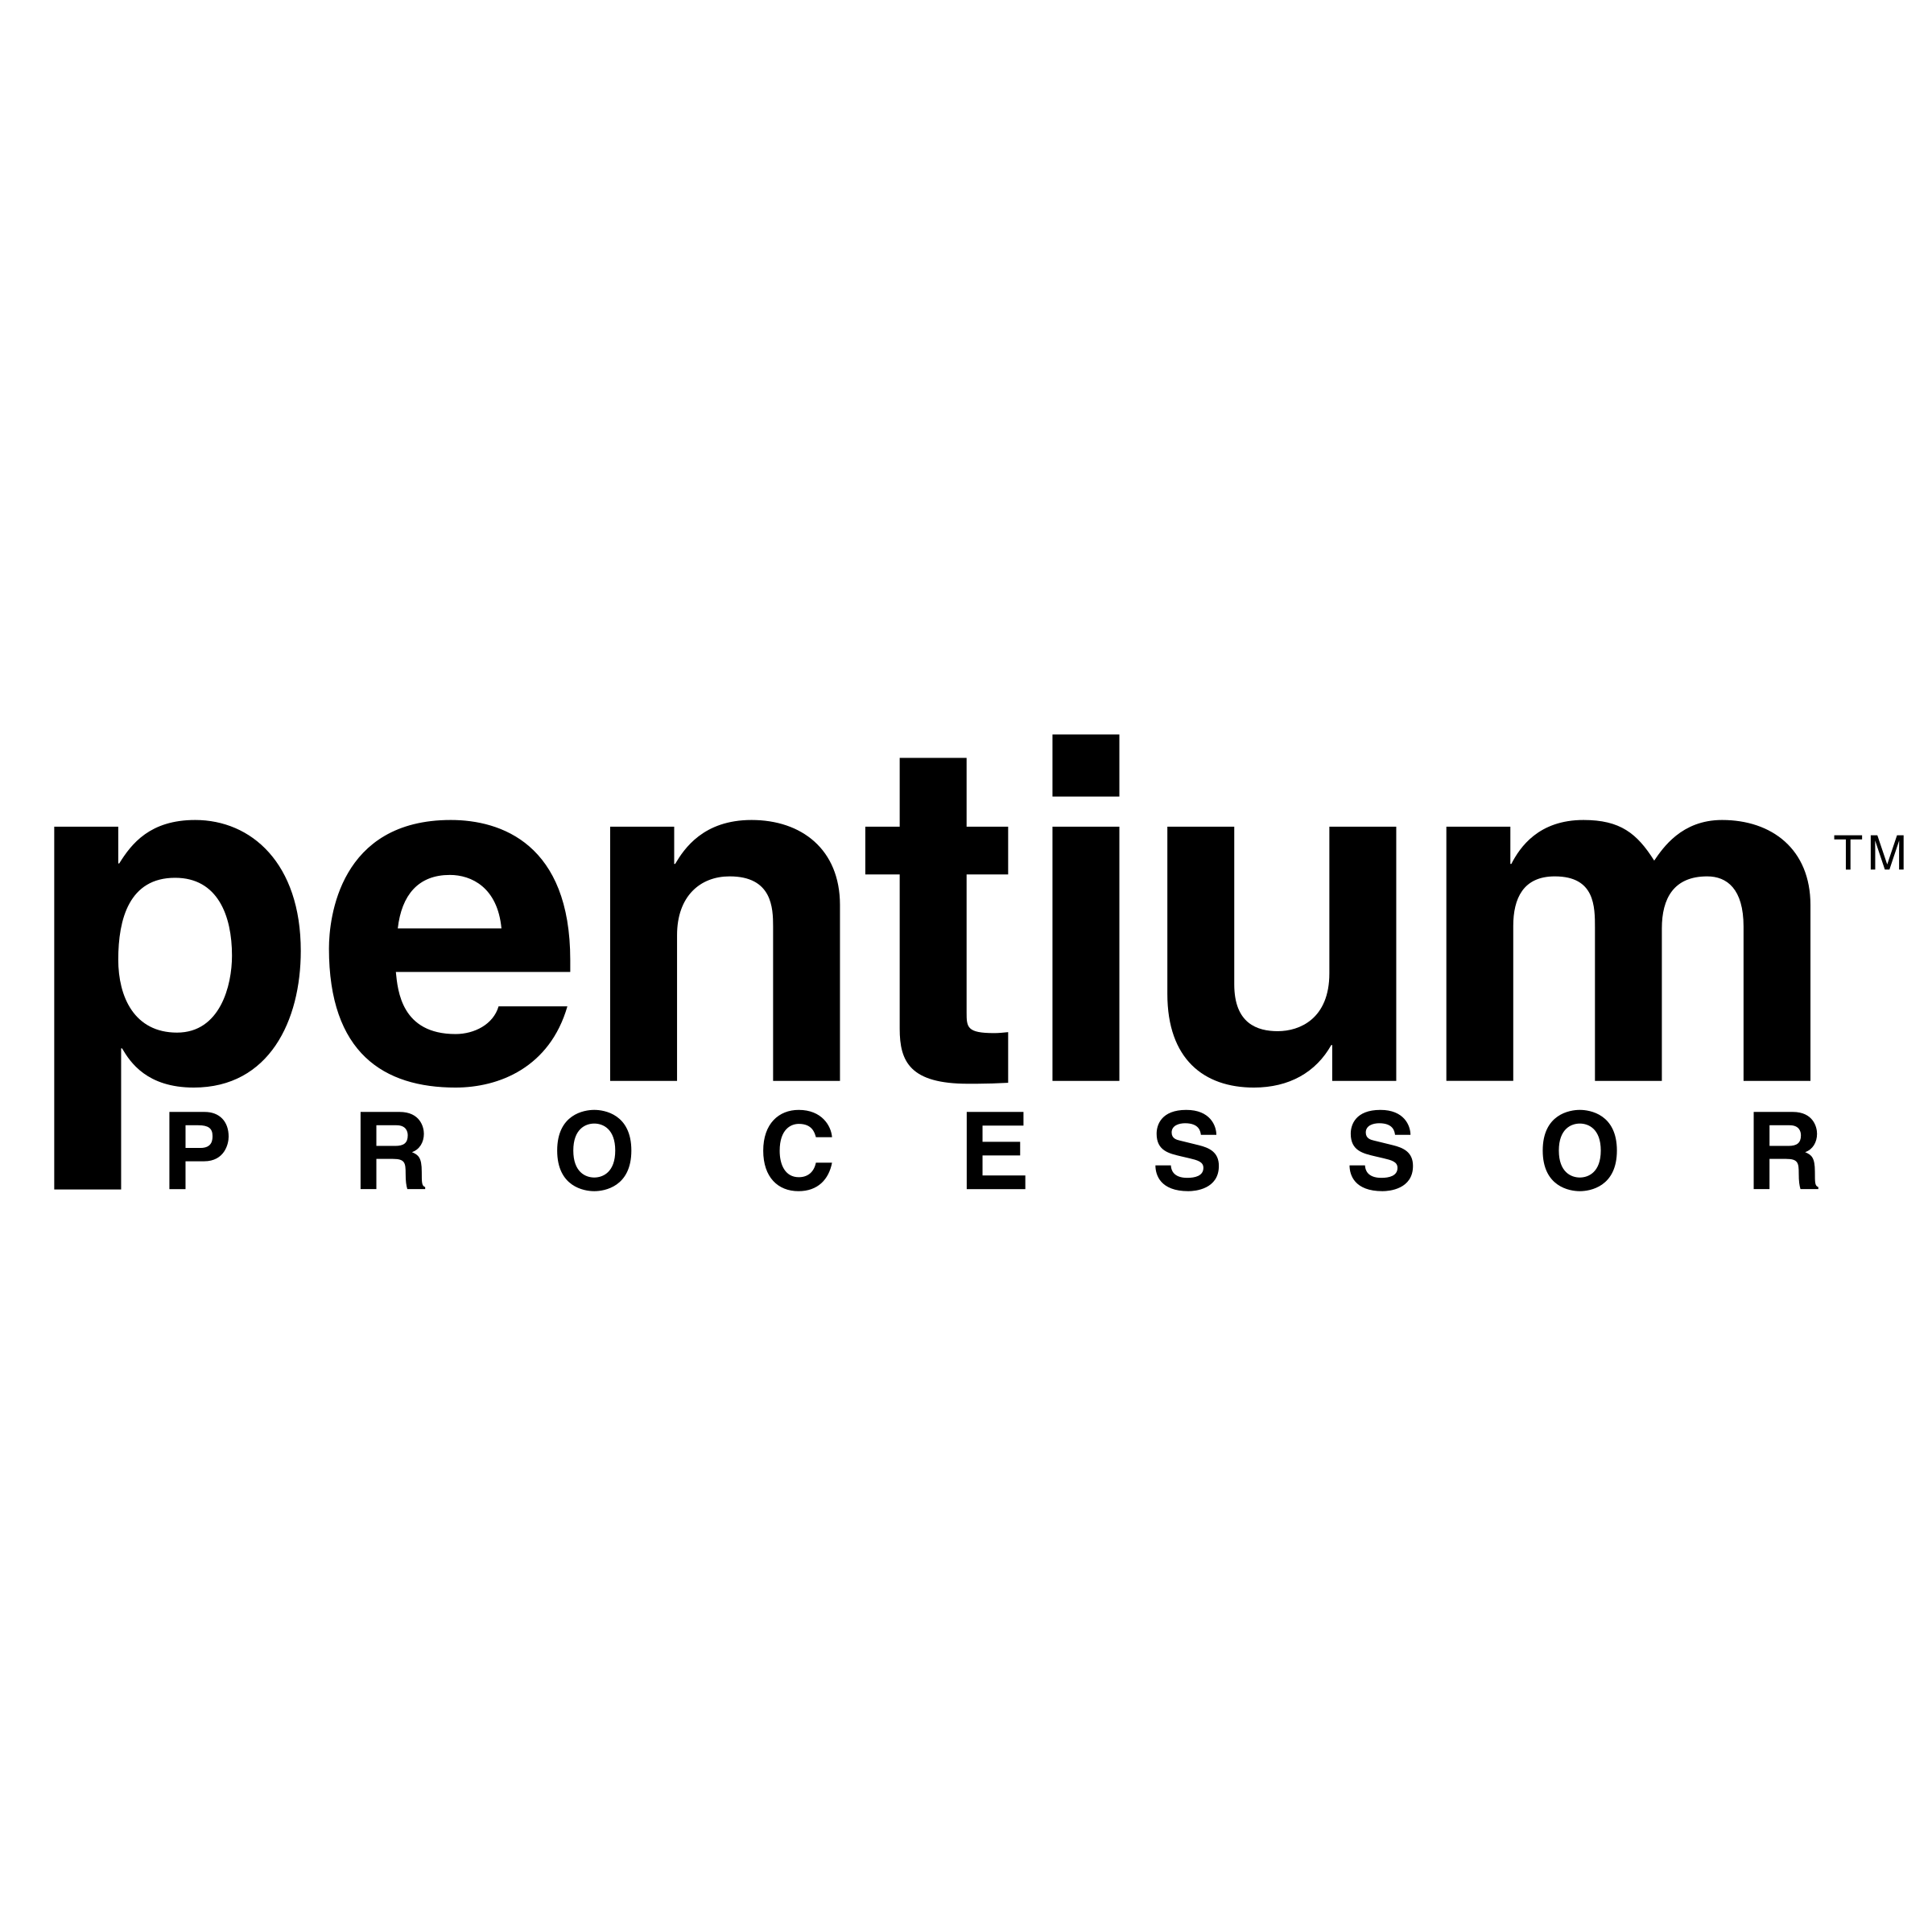 Pentium Logo - Pentium Logo PNG Transparent & SVG Vector - Freebie Supply